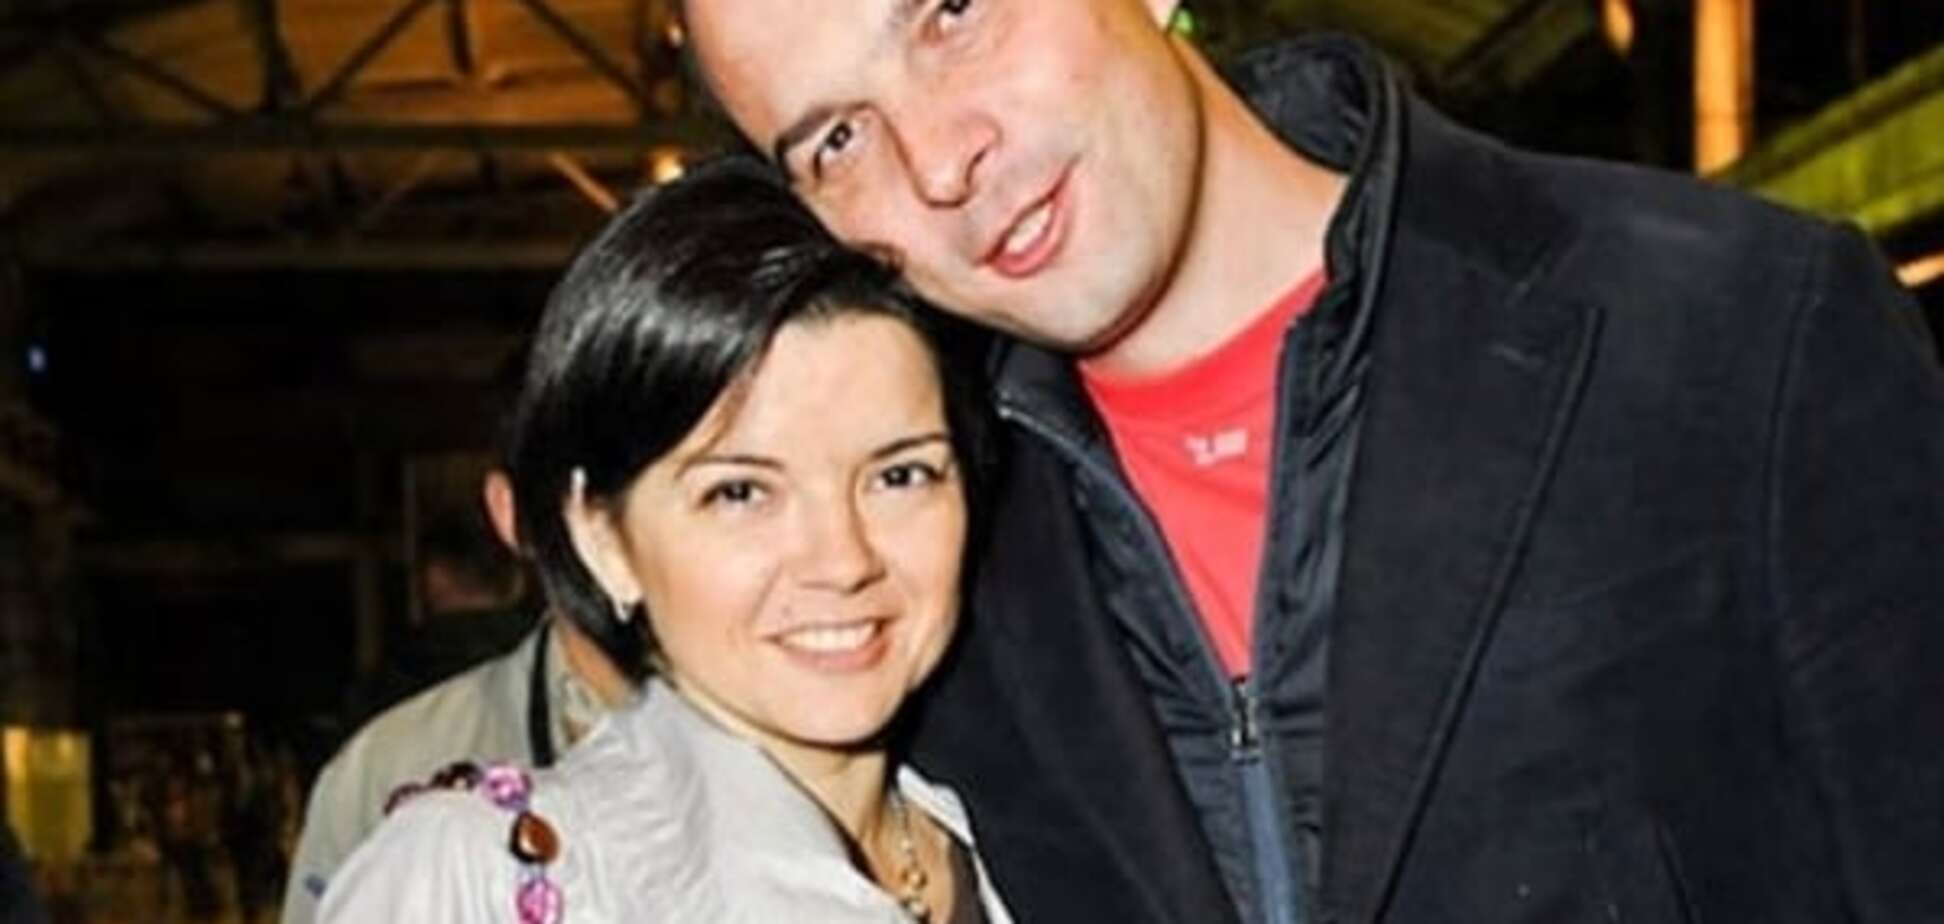 Соболєва вигнала з дому дружина через 'антидискримінаційну' поправку